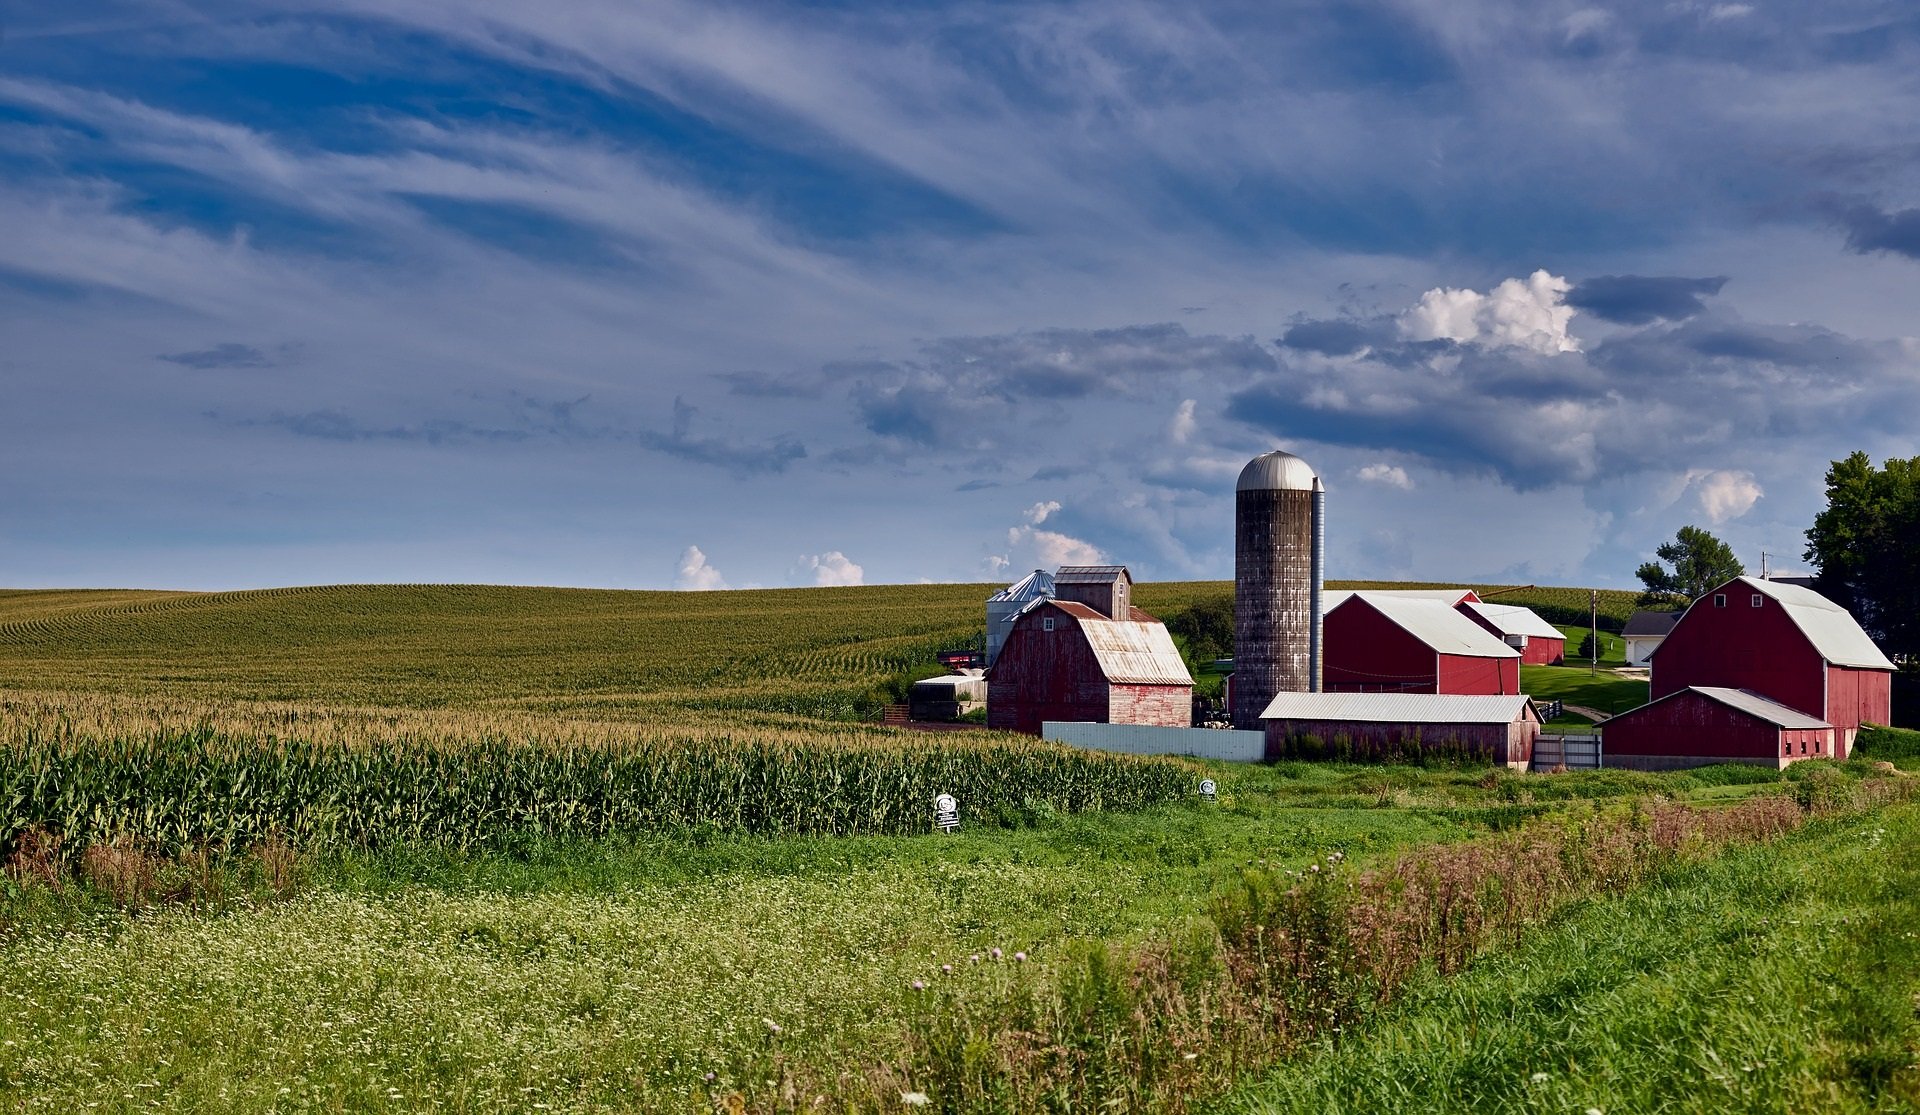 Rural Iowa landscape